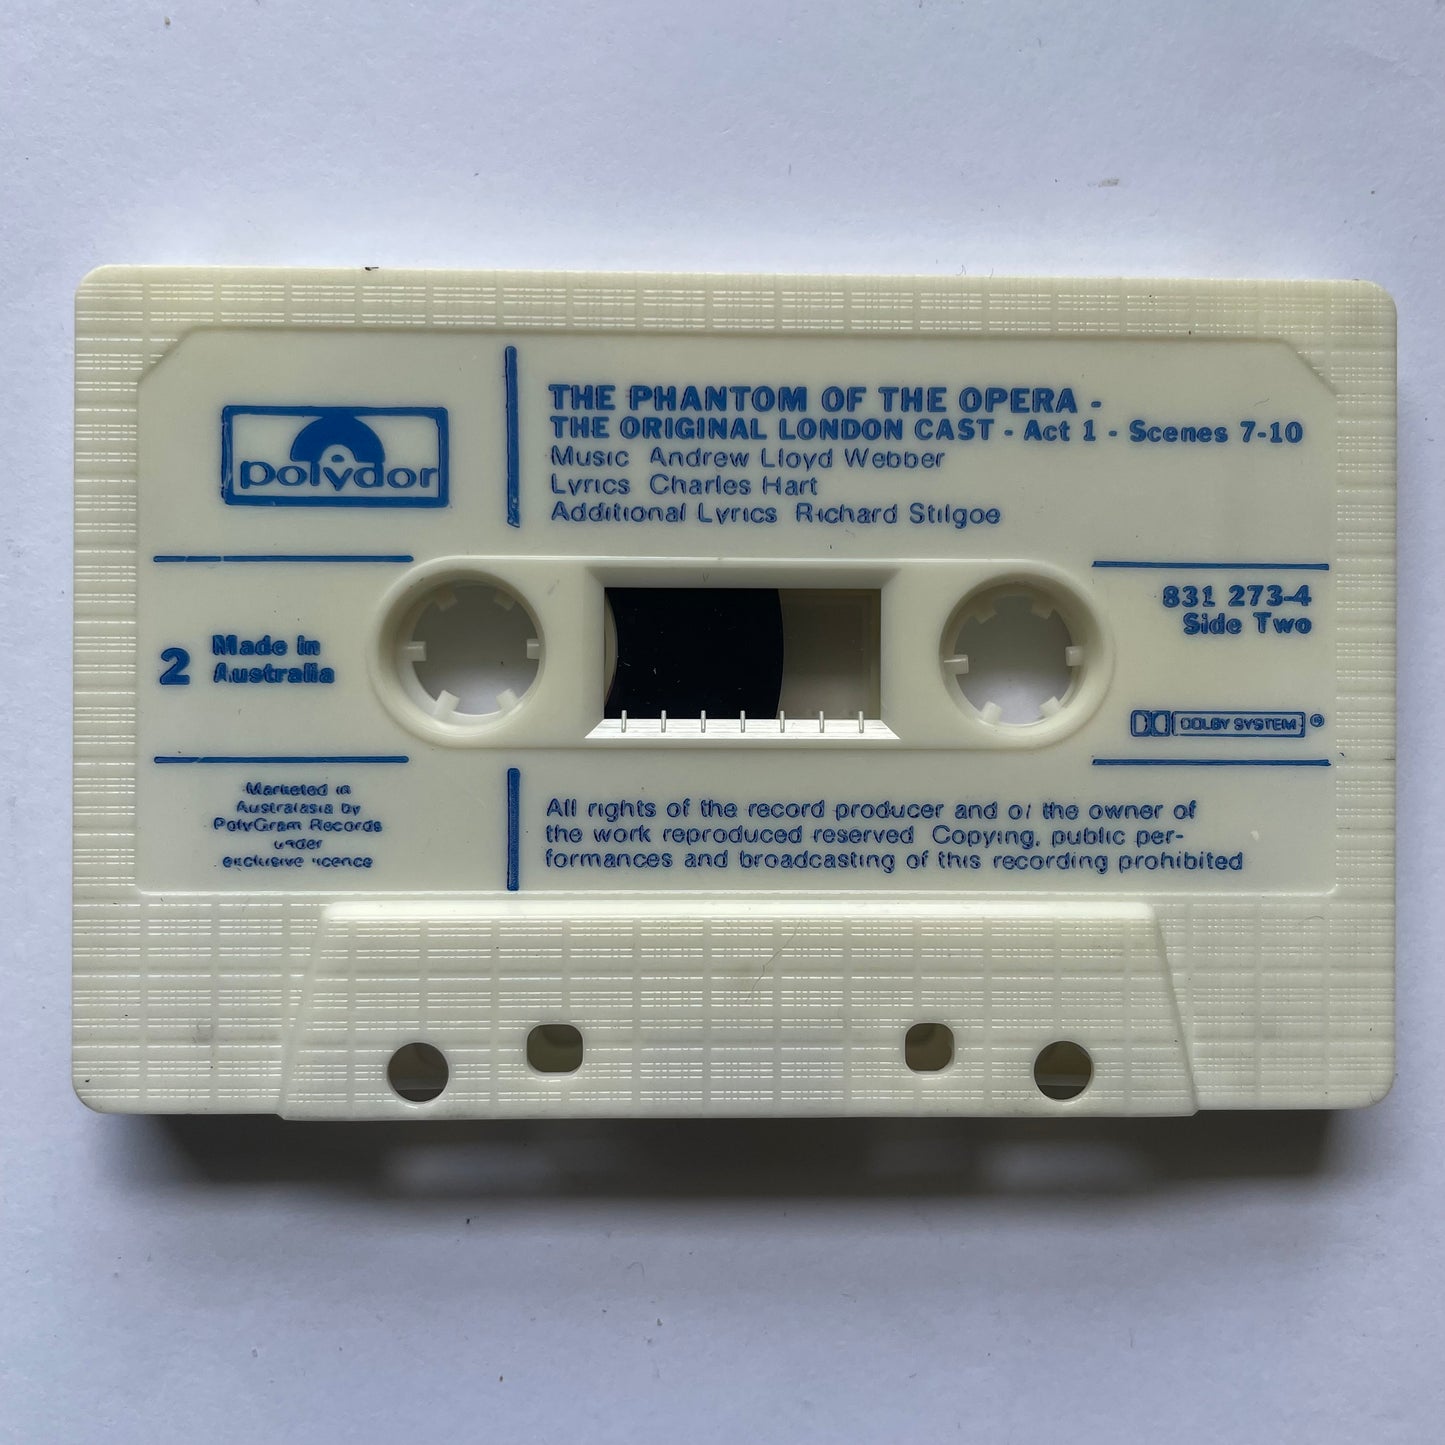 Tape Cassette The Phantom of the Opera side 2 